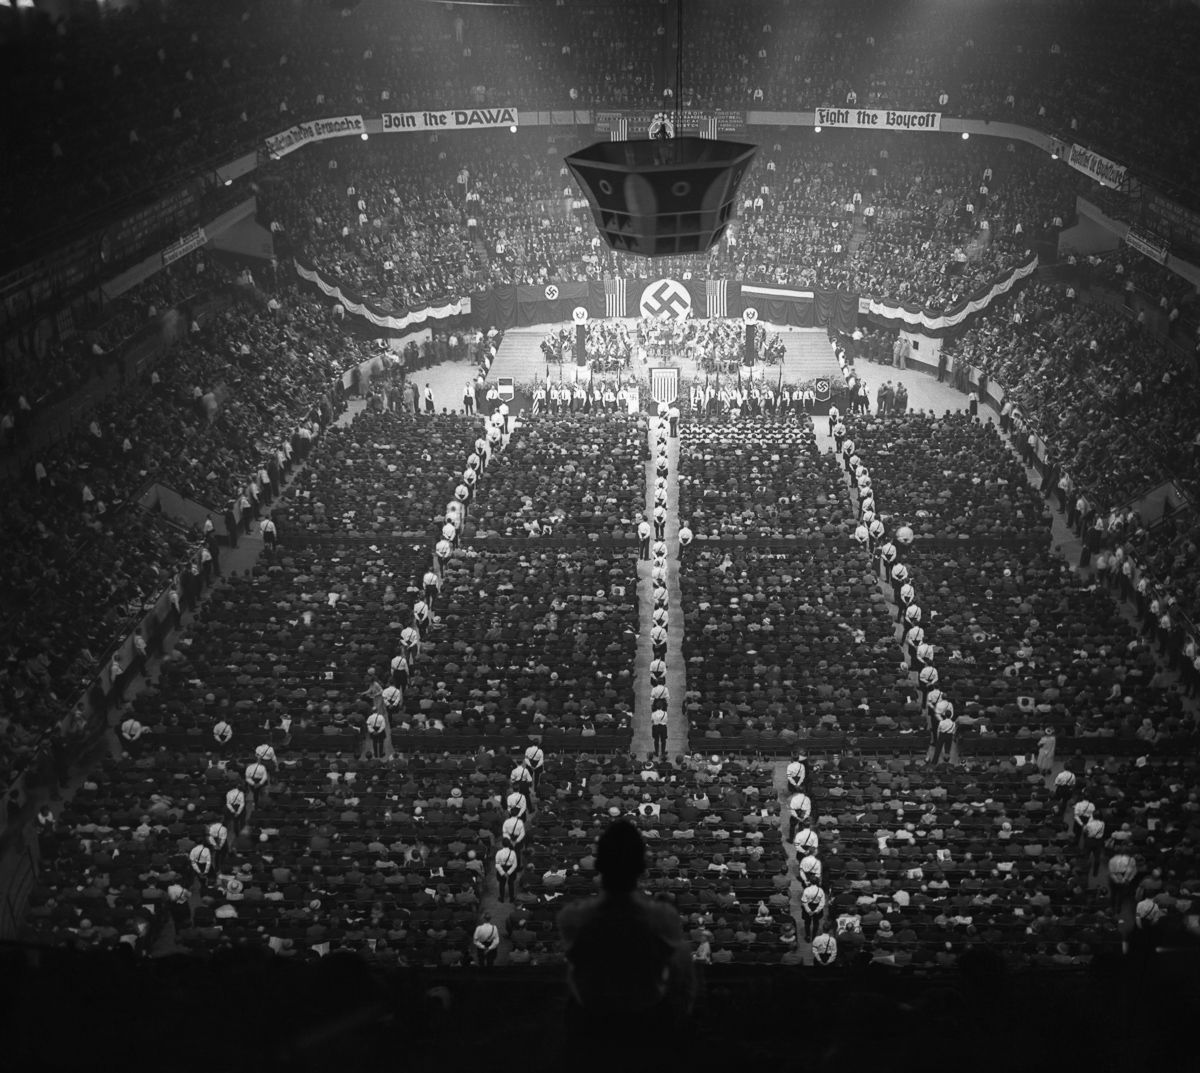 20 mil americanos marcam presenta em comício nazista no Madison Square Garden. O grupo contava tanto com alemães quanto americanos de ascendência alemã entre os membros que defendiam a supremacia nazista - 20 de fevereiro de 1939